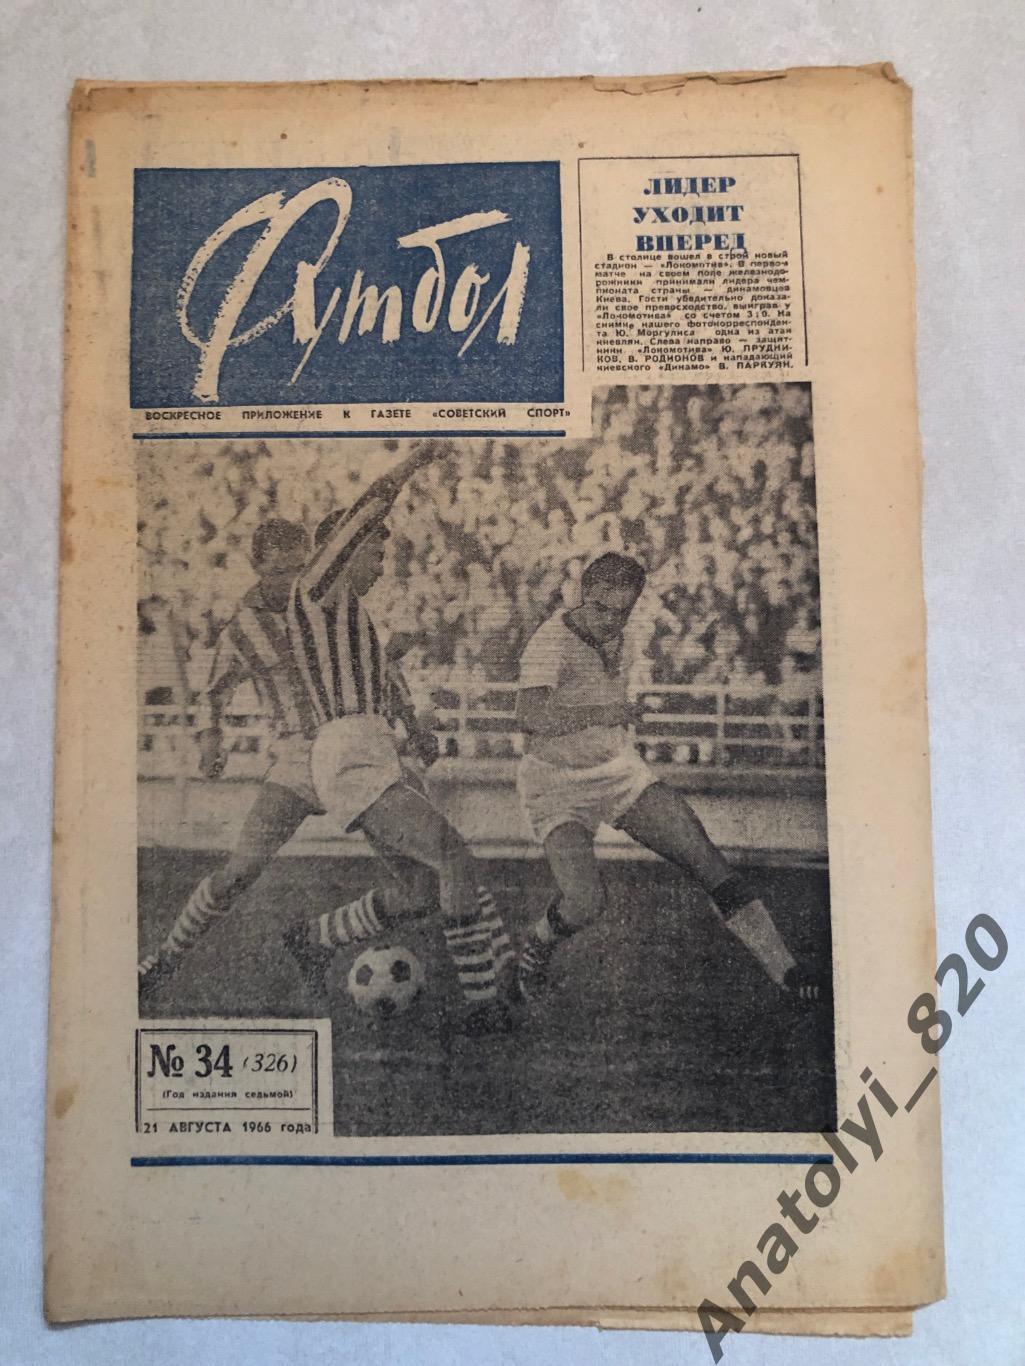 Еженедельник футбол номер 34 от 21.08.1966